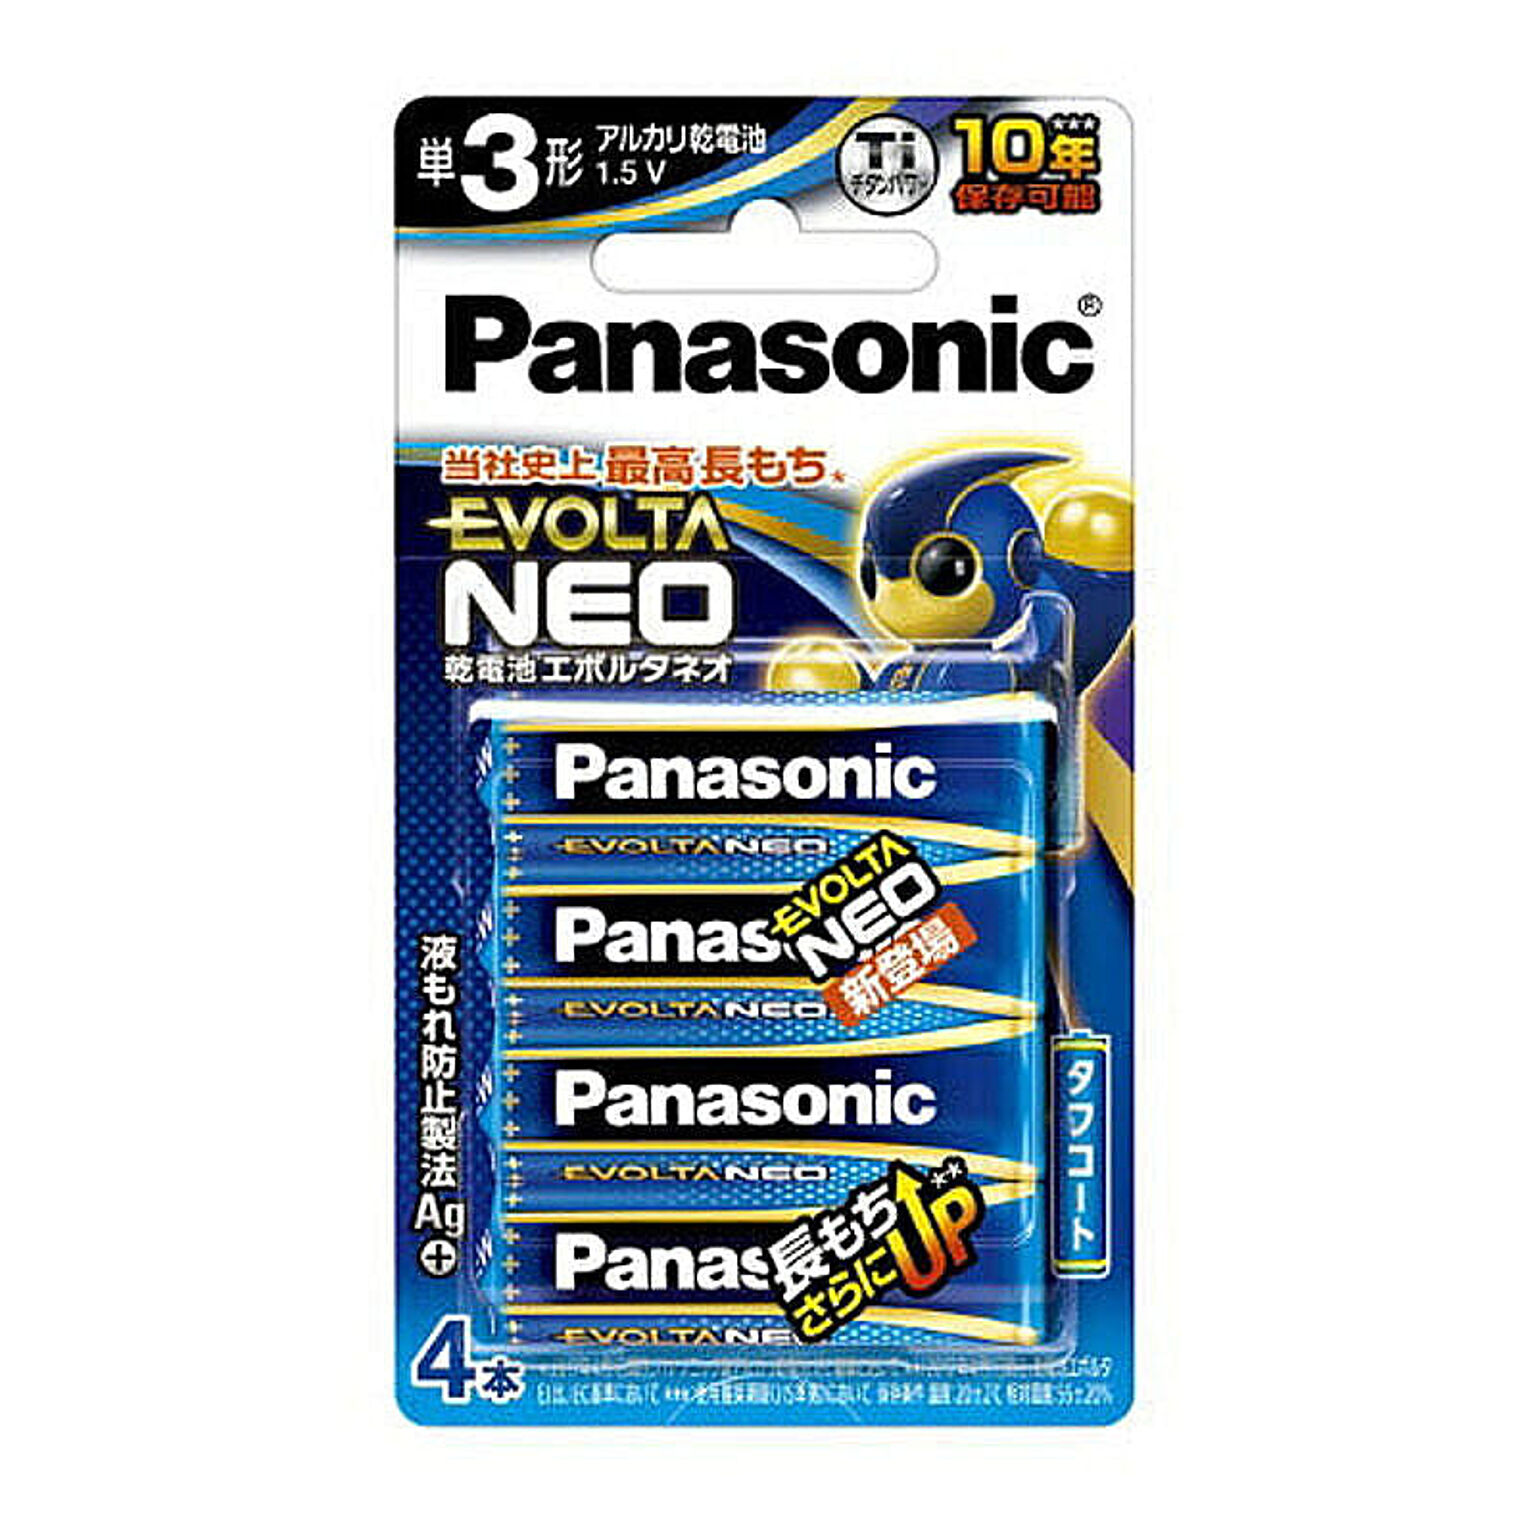 パナソニック Panasonic EVOLTA NEO エボルタネオ 単3形アルカリ乾電池 4本パック 日本製 LR6NJ/4B 台風 防災グッズ 管理No. 4549077899002